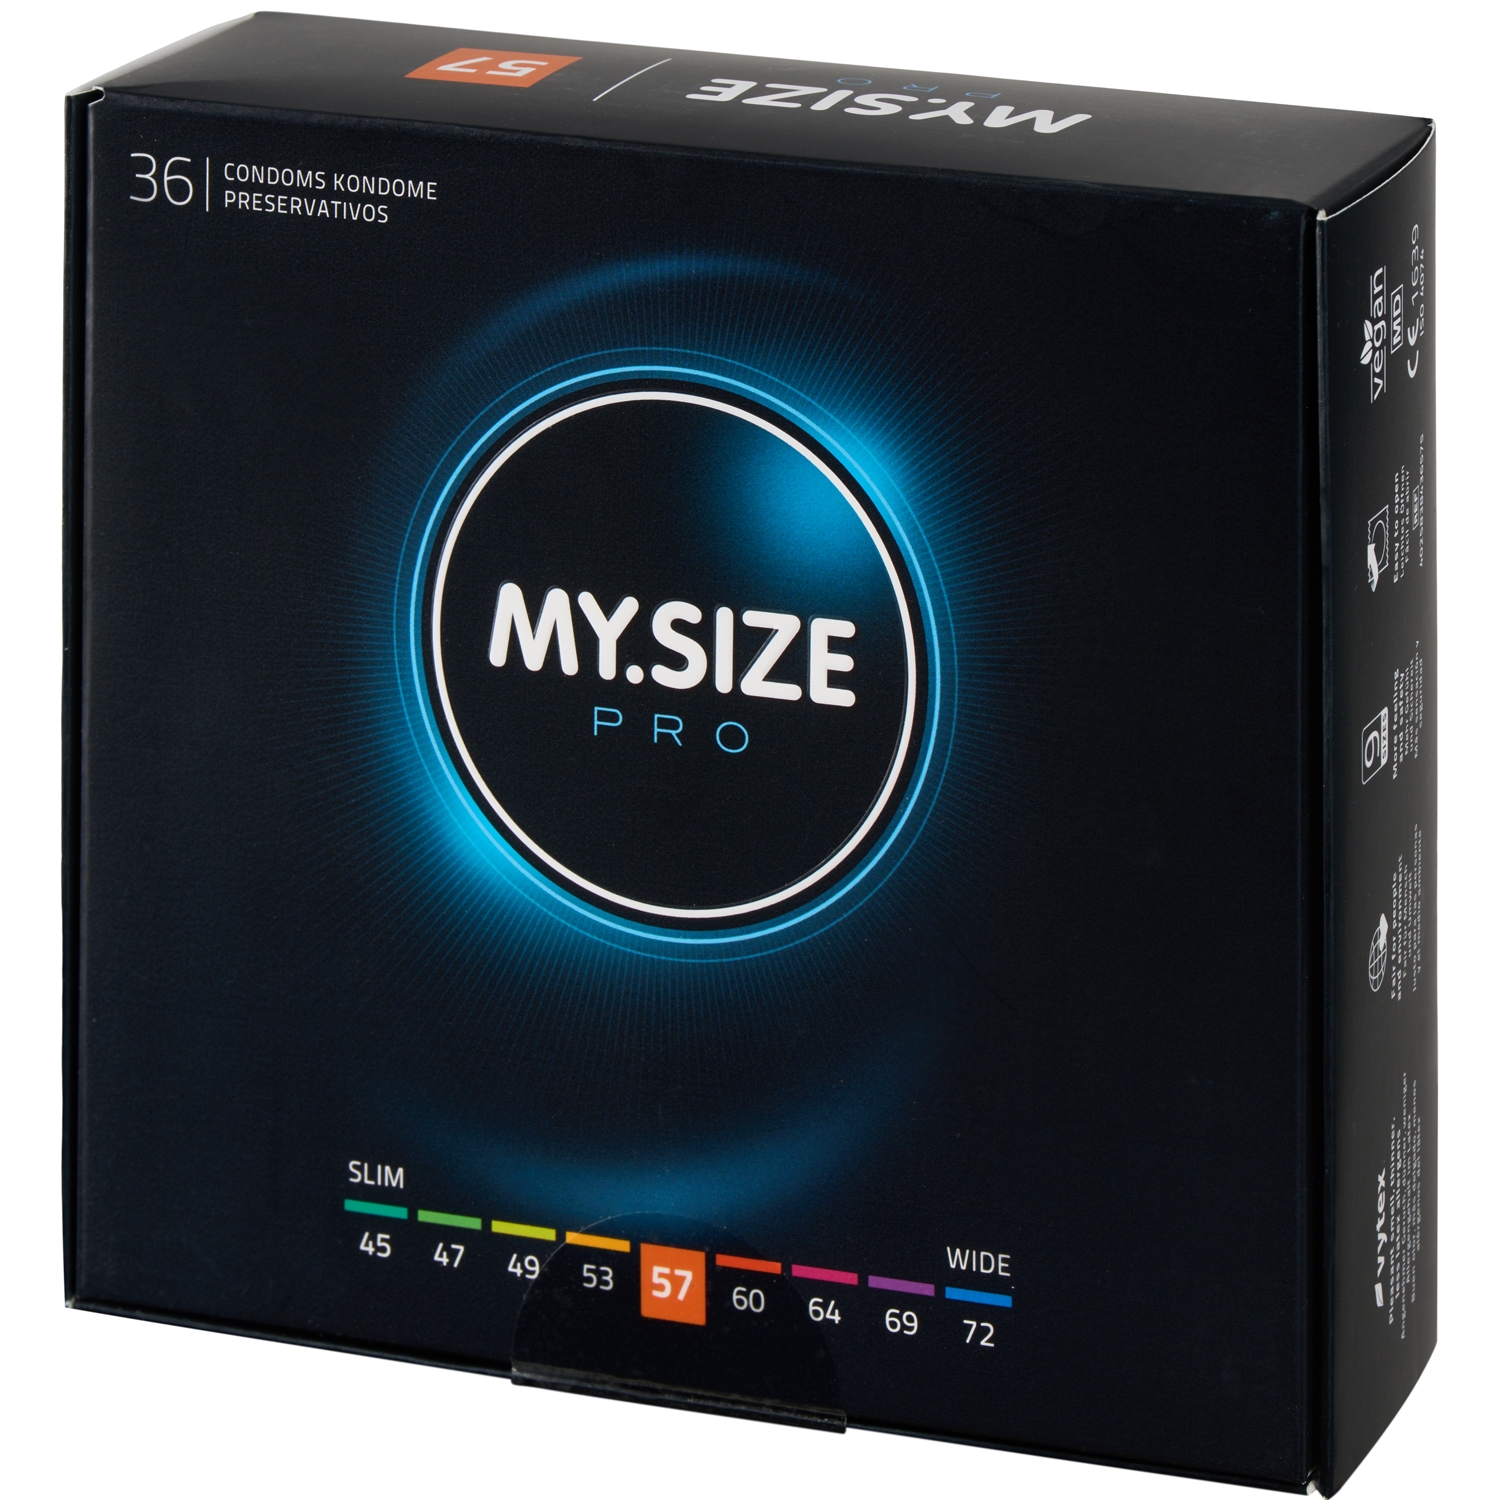 My.Size Pro Kondomer 36 stk - Clear